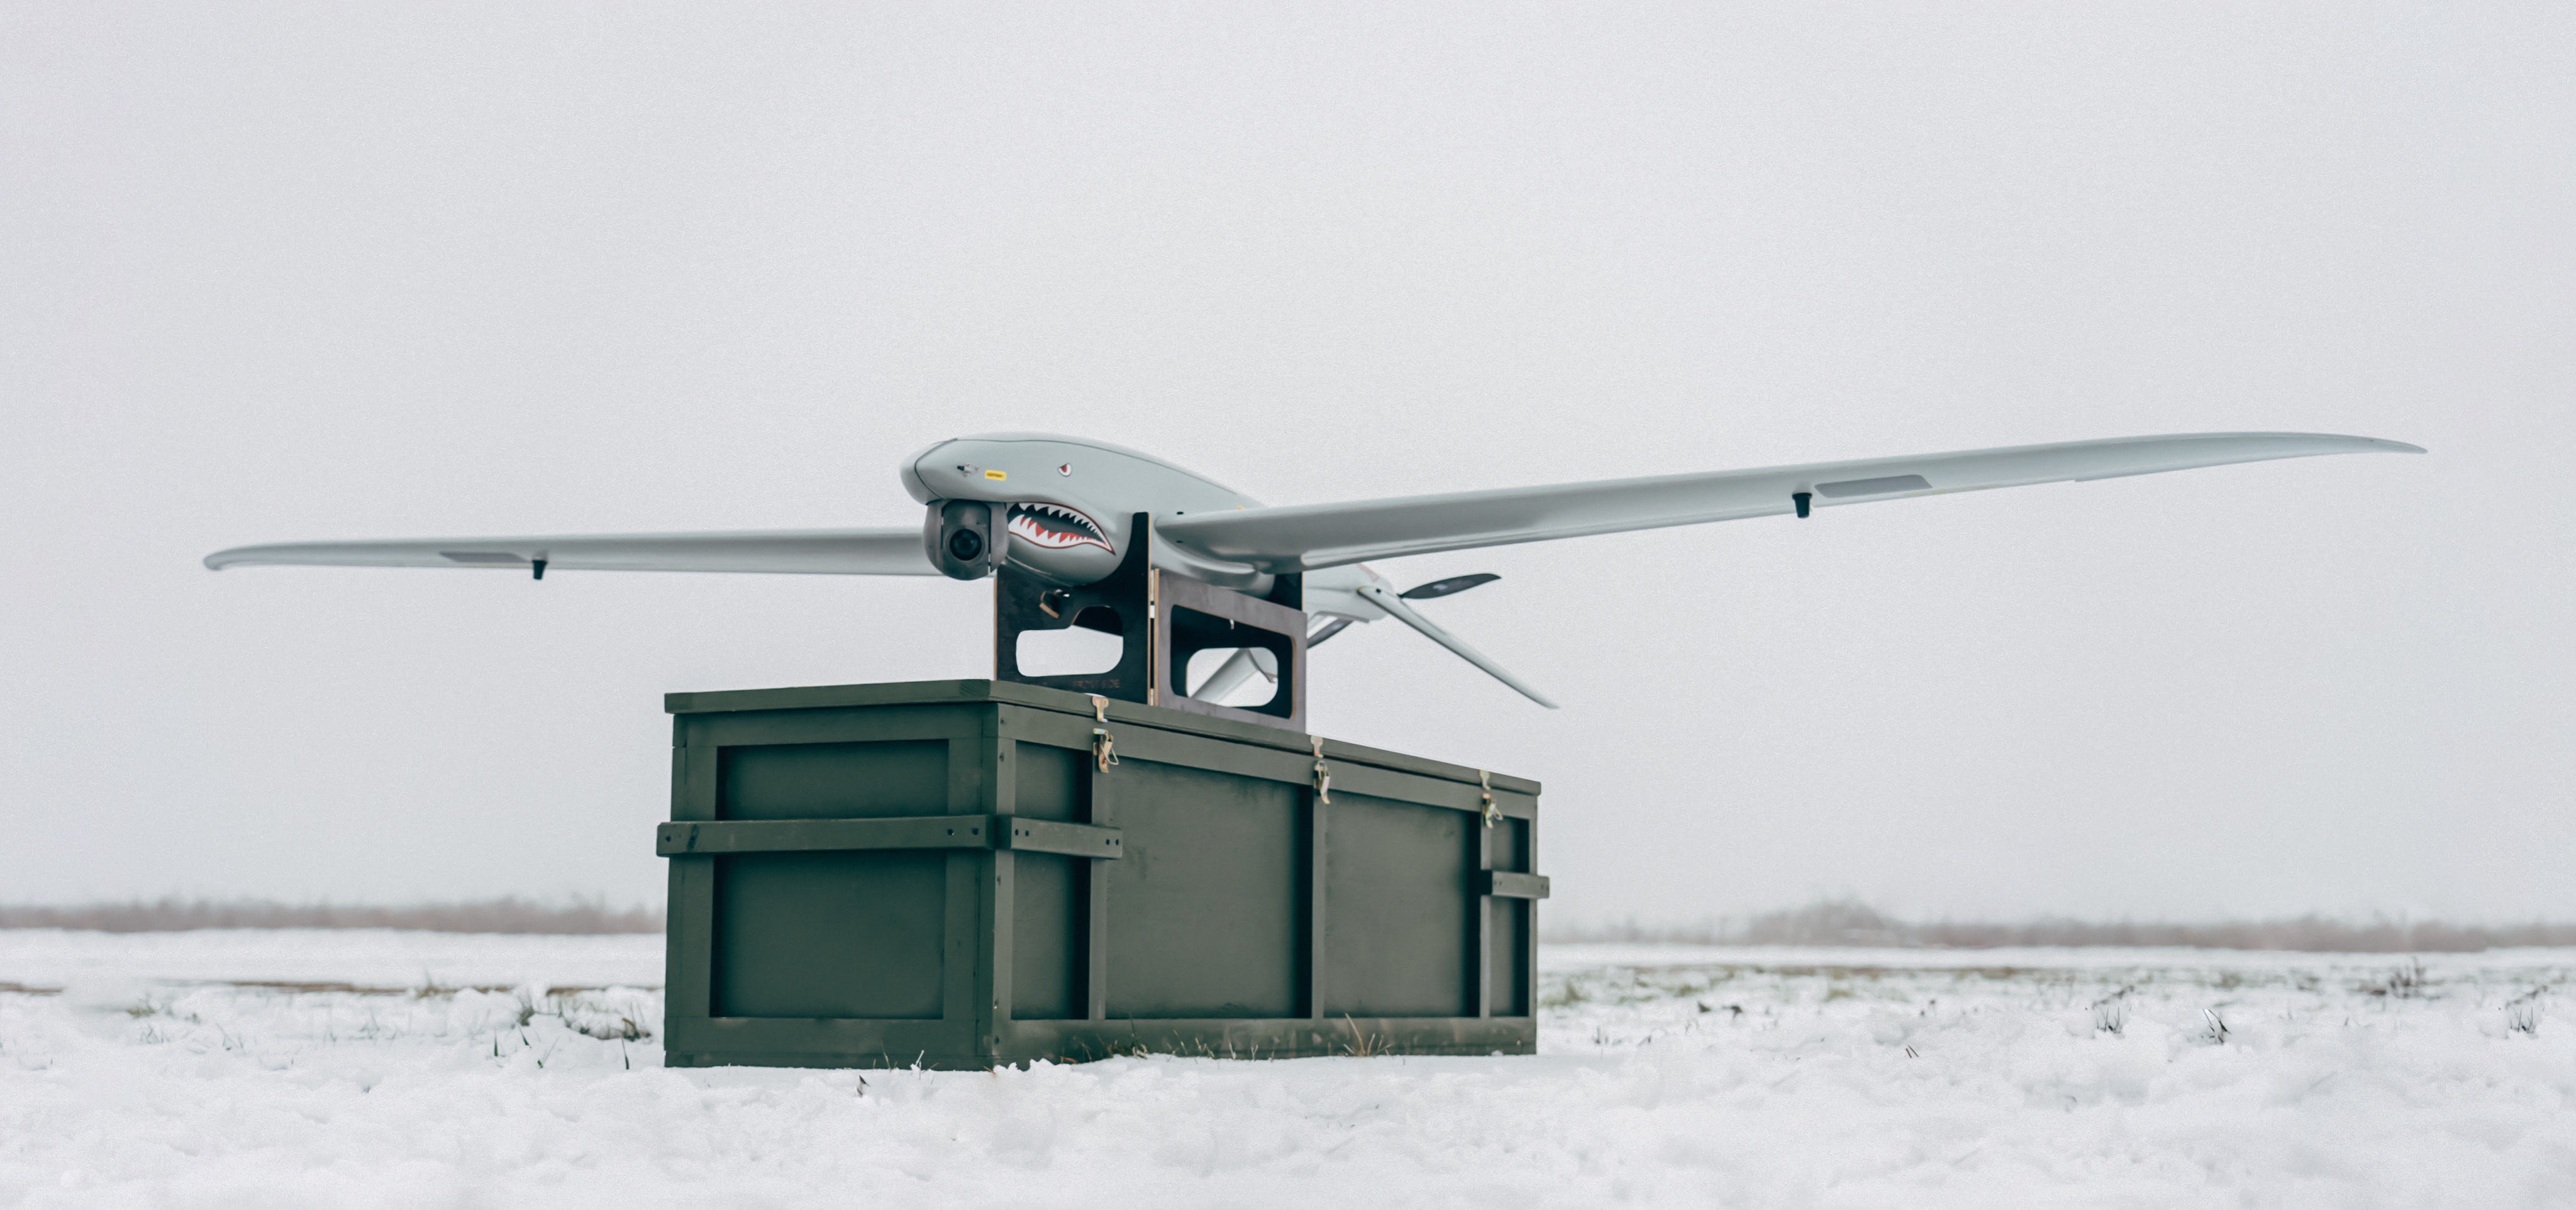 Ukrspecsystems unowocześnia ukraińskiego drona zwiadowczego SHARK poprzez wydłużenie skrzydeł i wydłużenie czasu pracy baterii